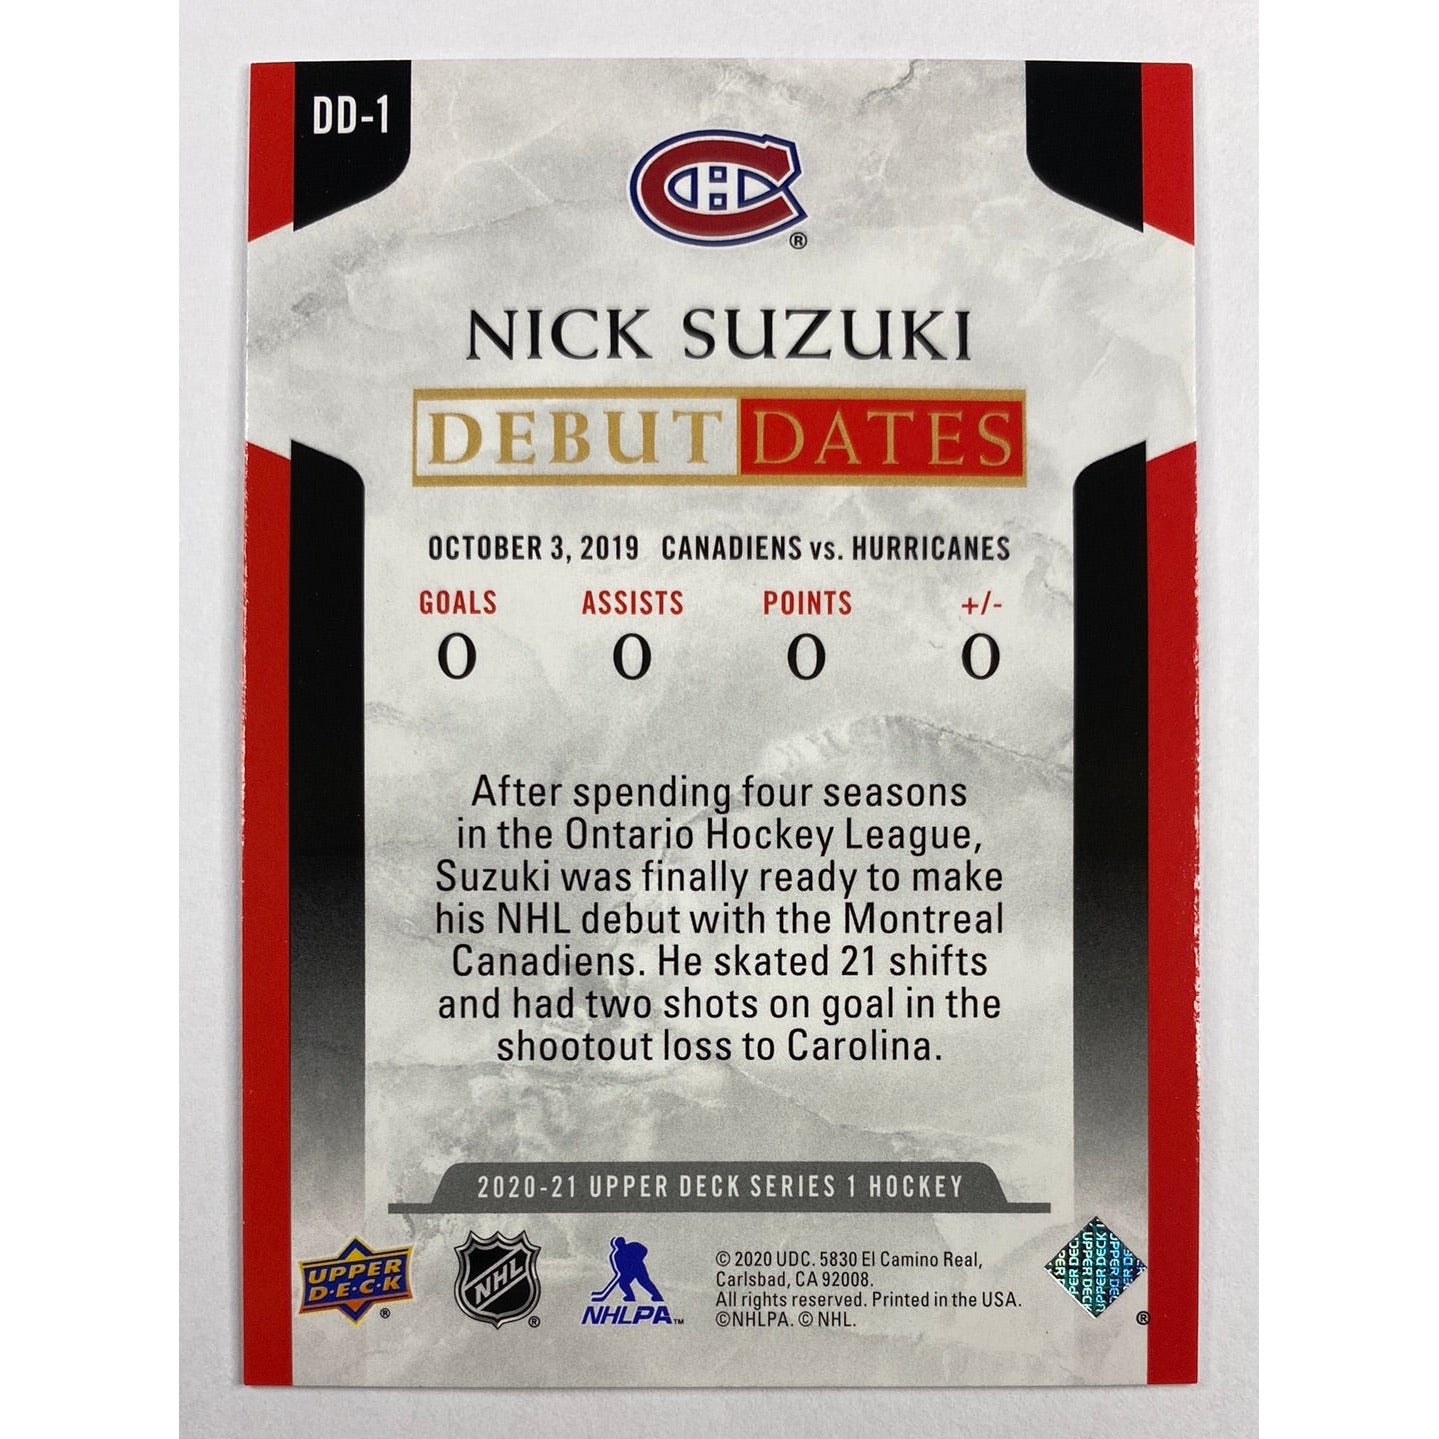 2020-21 Upper Deck Series 1 Nick Suzuki Debut Dates